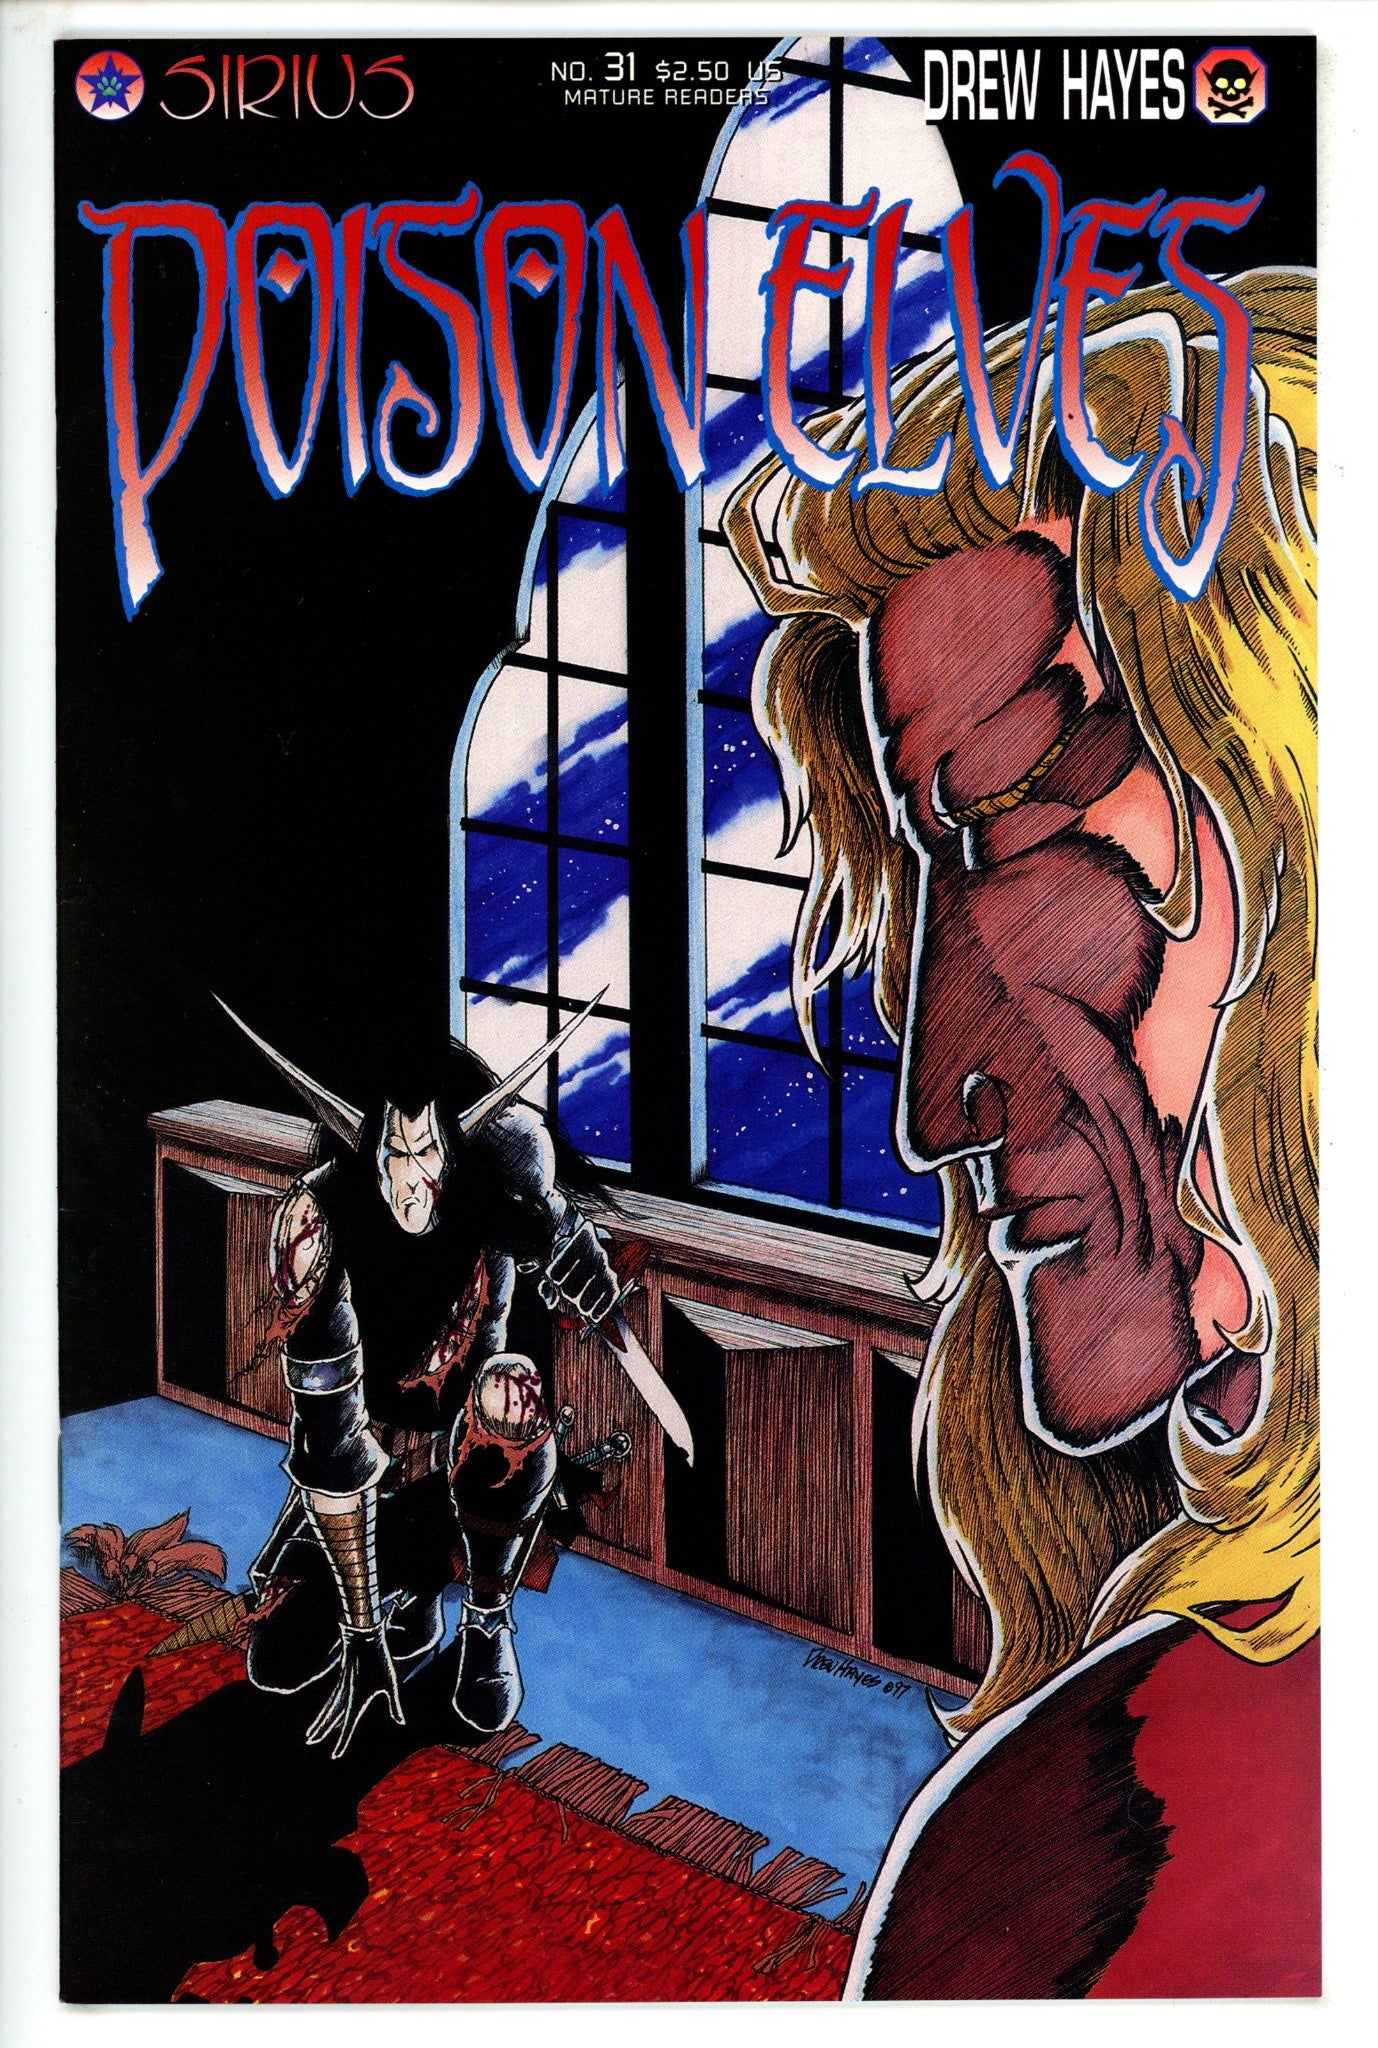 Poison Elves Vol 2 31 (1997)